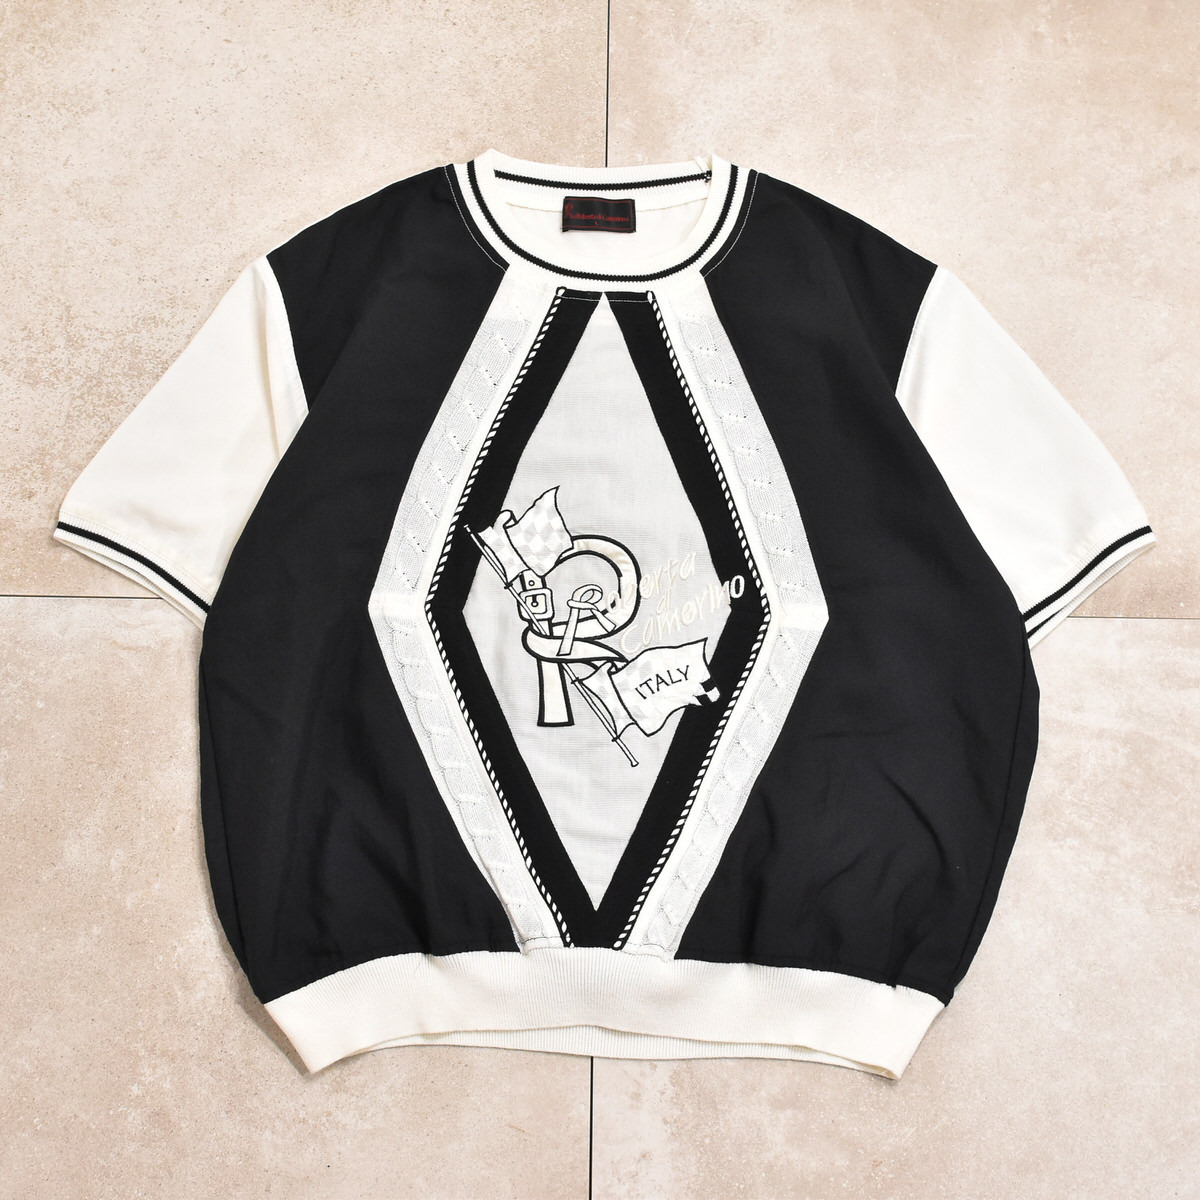 90s～ Roberta di Camerino T-shirtメンズ Lサイズ 90s～ ロベルタ・ディ・カメリーノ モノトーン デザインTシャツ_画像2